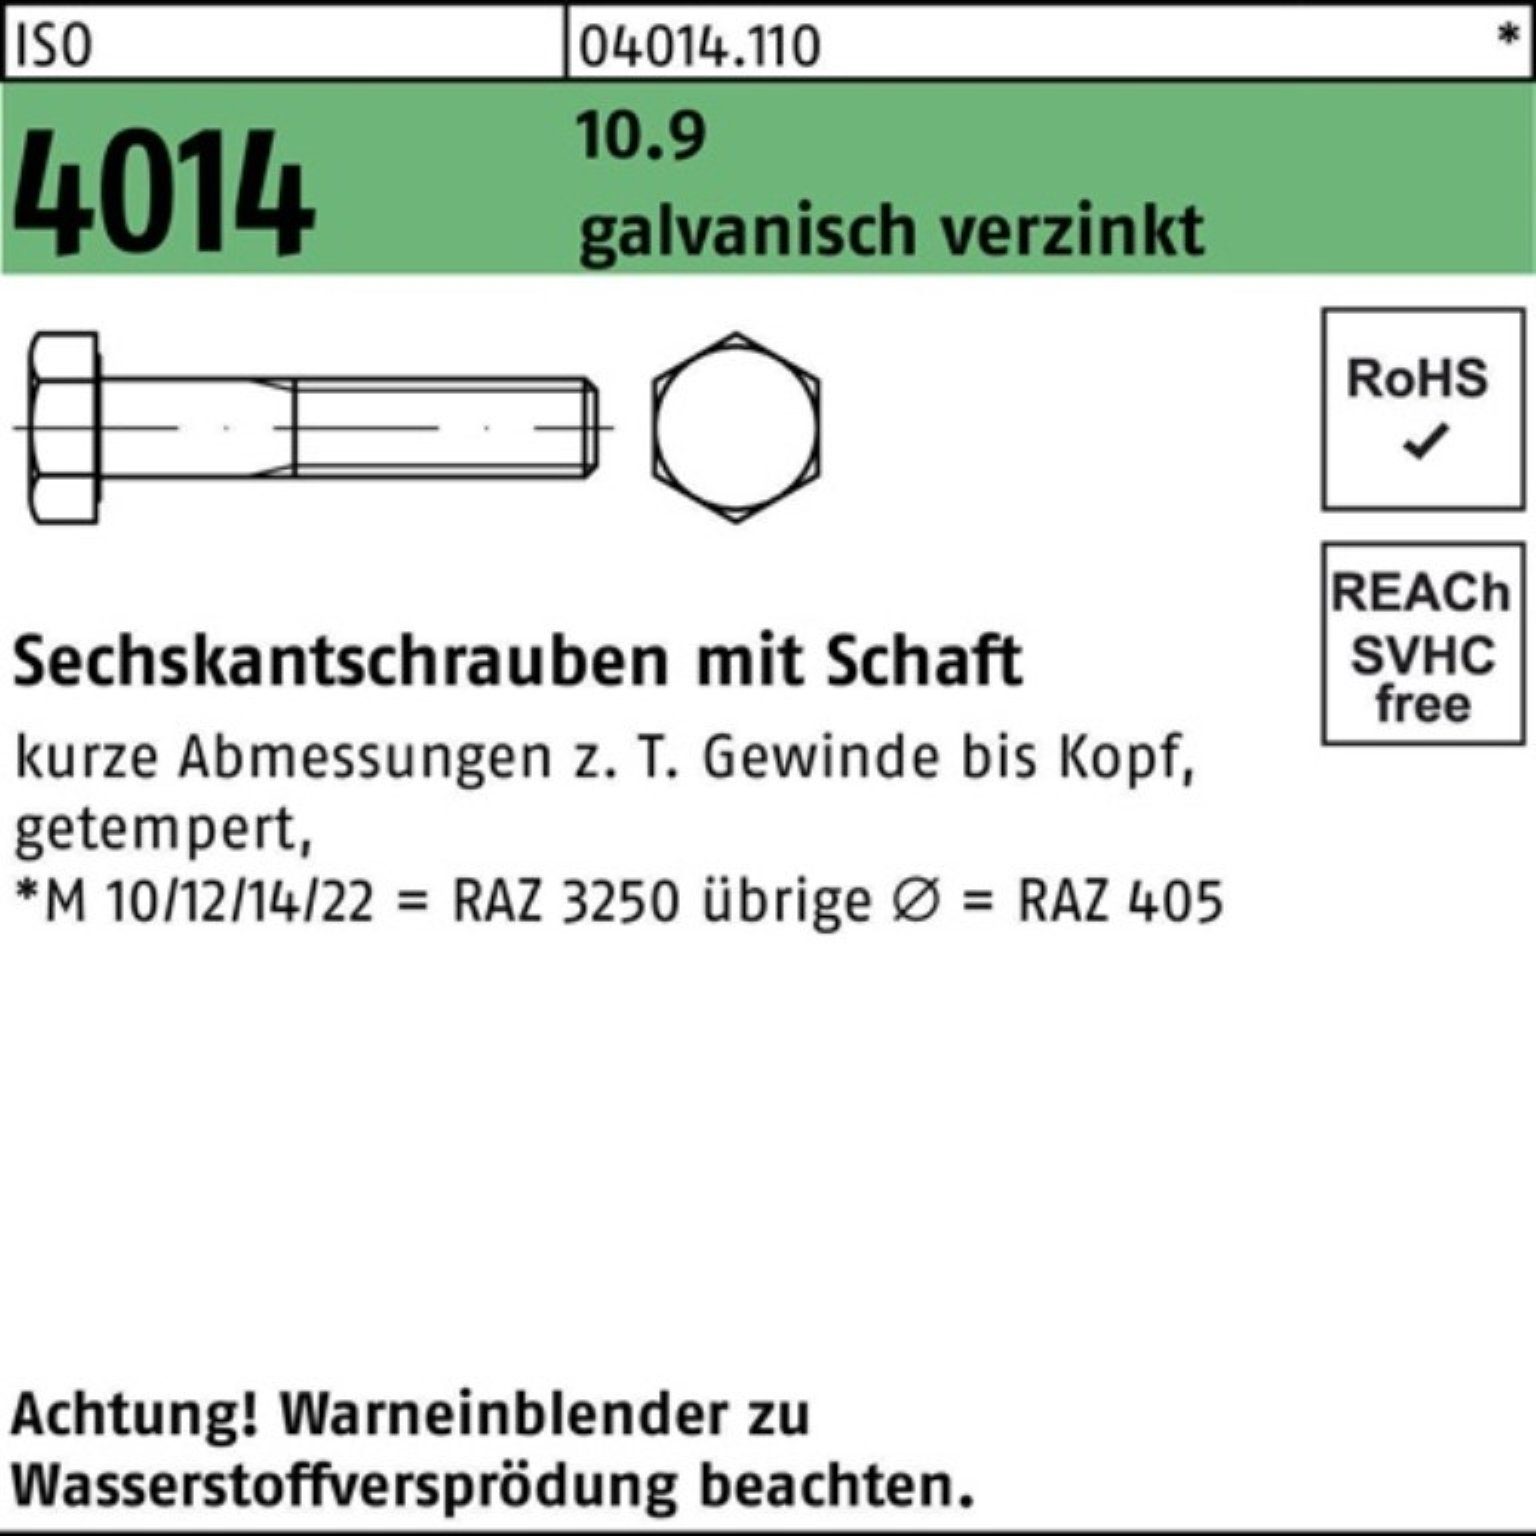 Bufab Sechskantschraube 100er Pack Sechskantschraube 4014 10.9 55 Schaft 5 ISO galv.verz. M14x